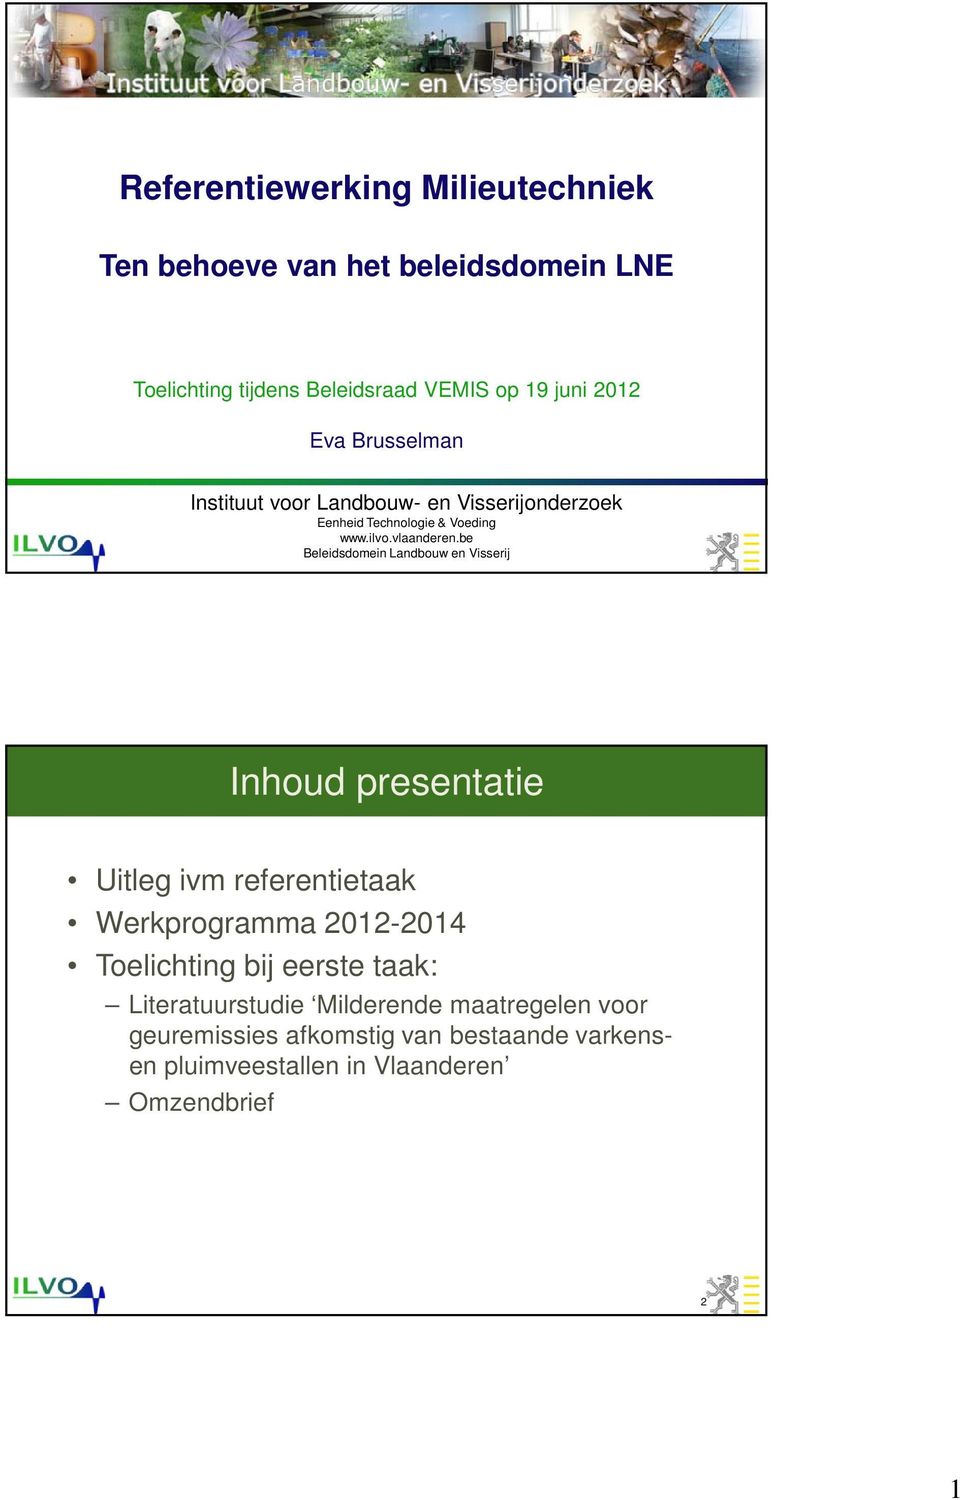 be Beleidsdomein Landbouw en Visserij Inhoud presentatie Uitleg ivm referentietaak Werkprogramma 2012-2014 Toelichting bij